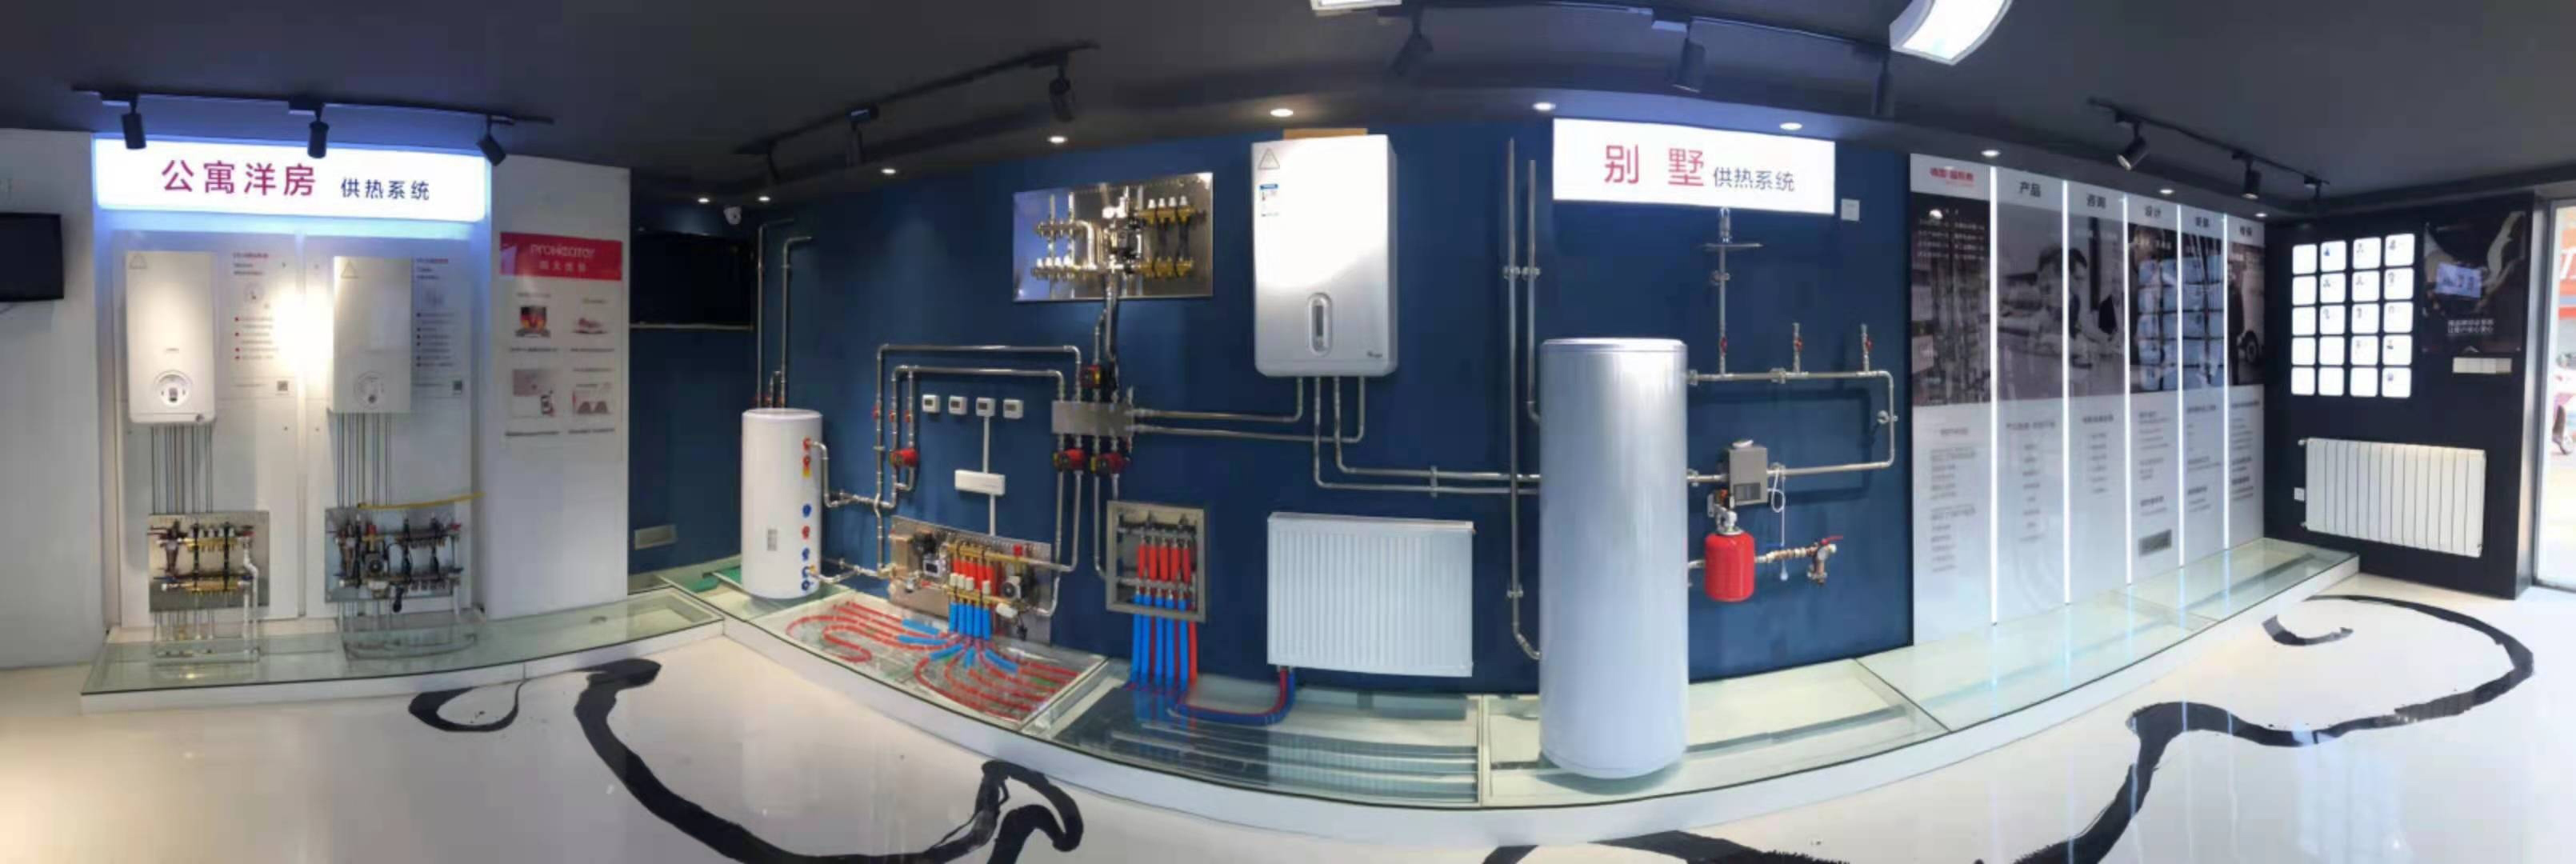 普热惠壁挂炉带水箱原理系统图